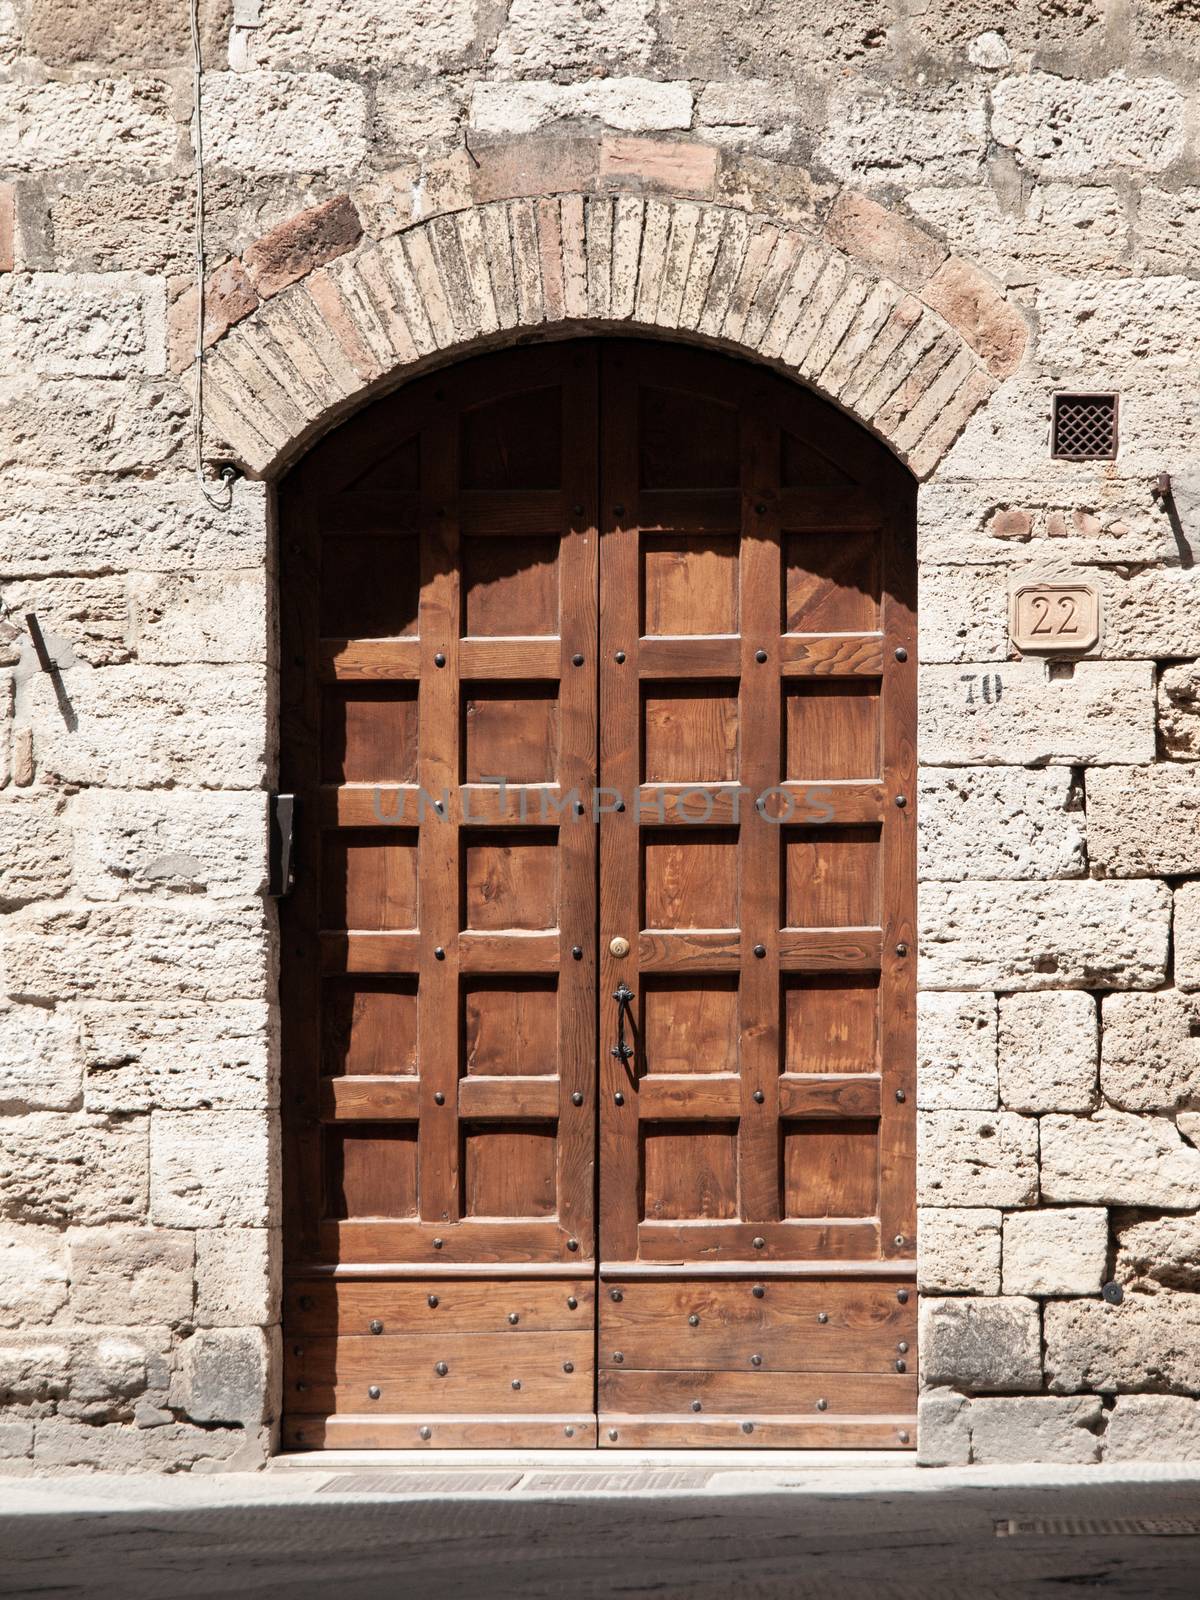 Old brown wooden door in medieval street.